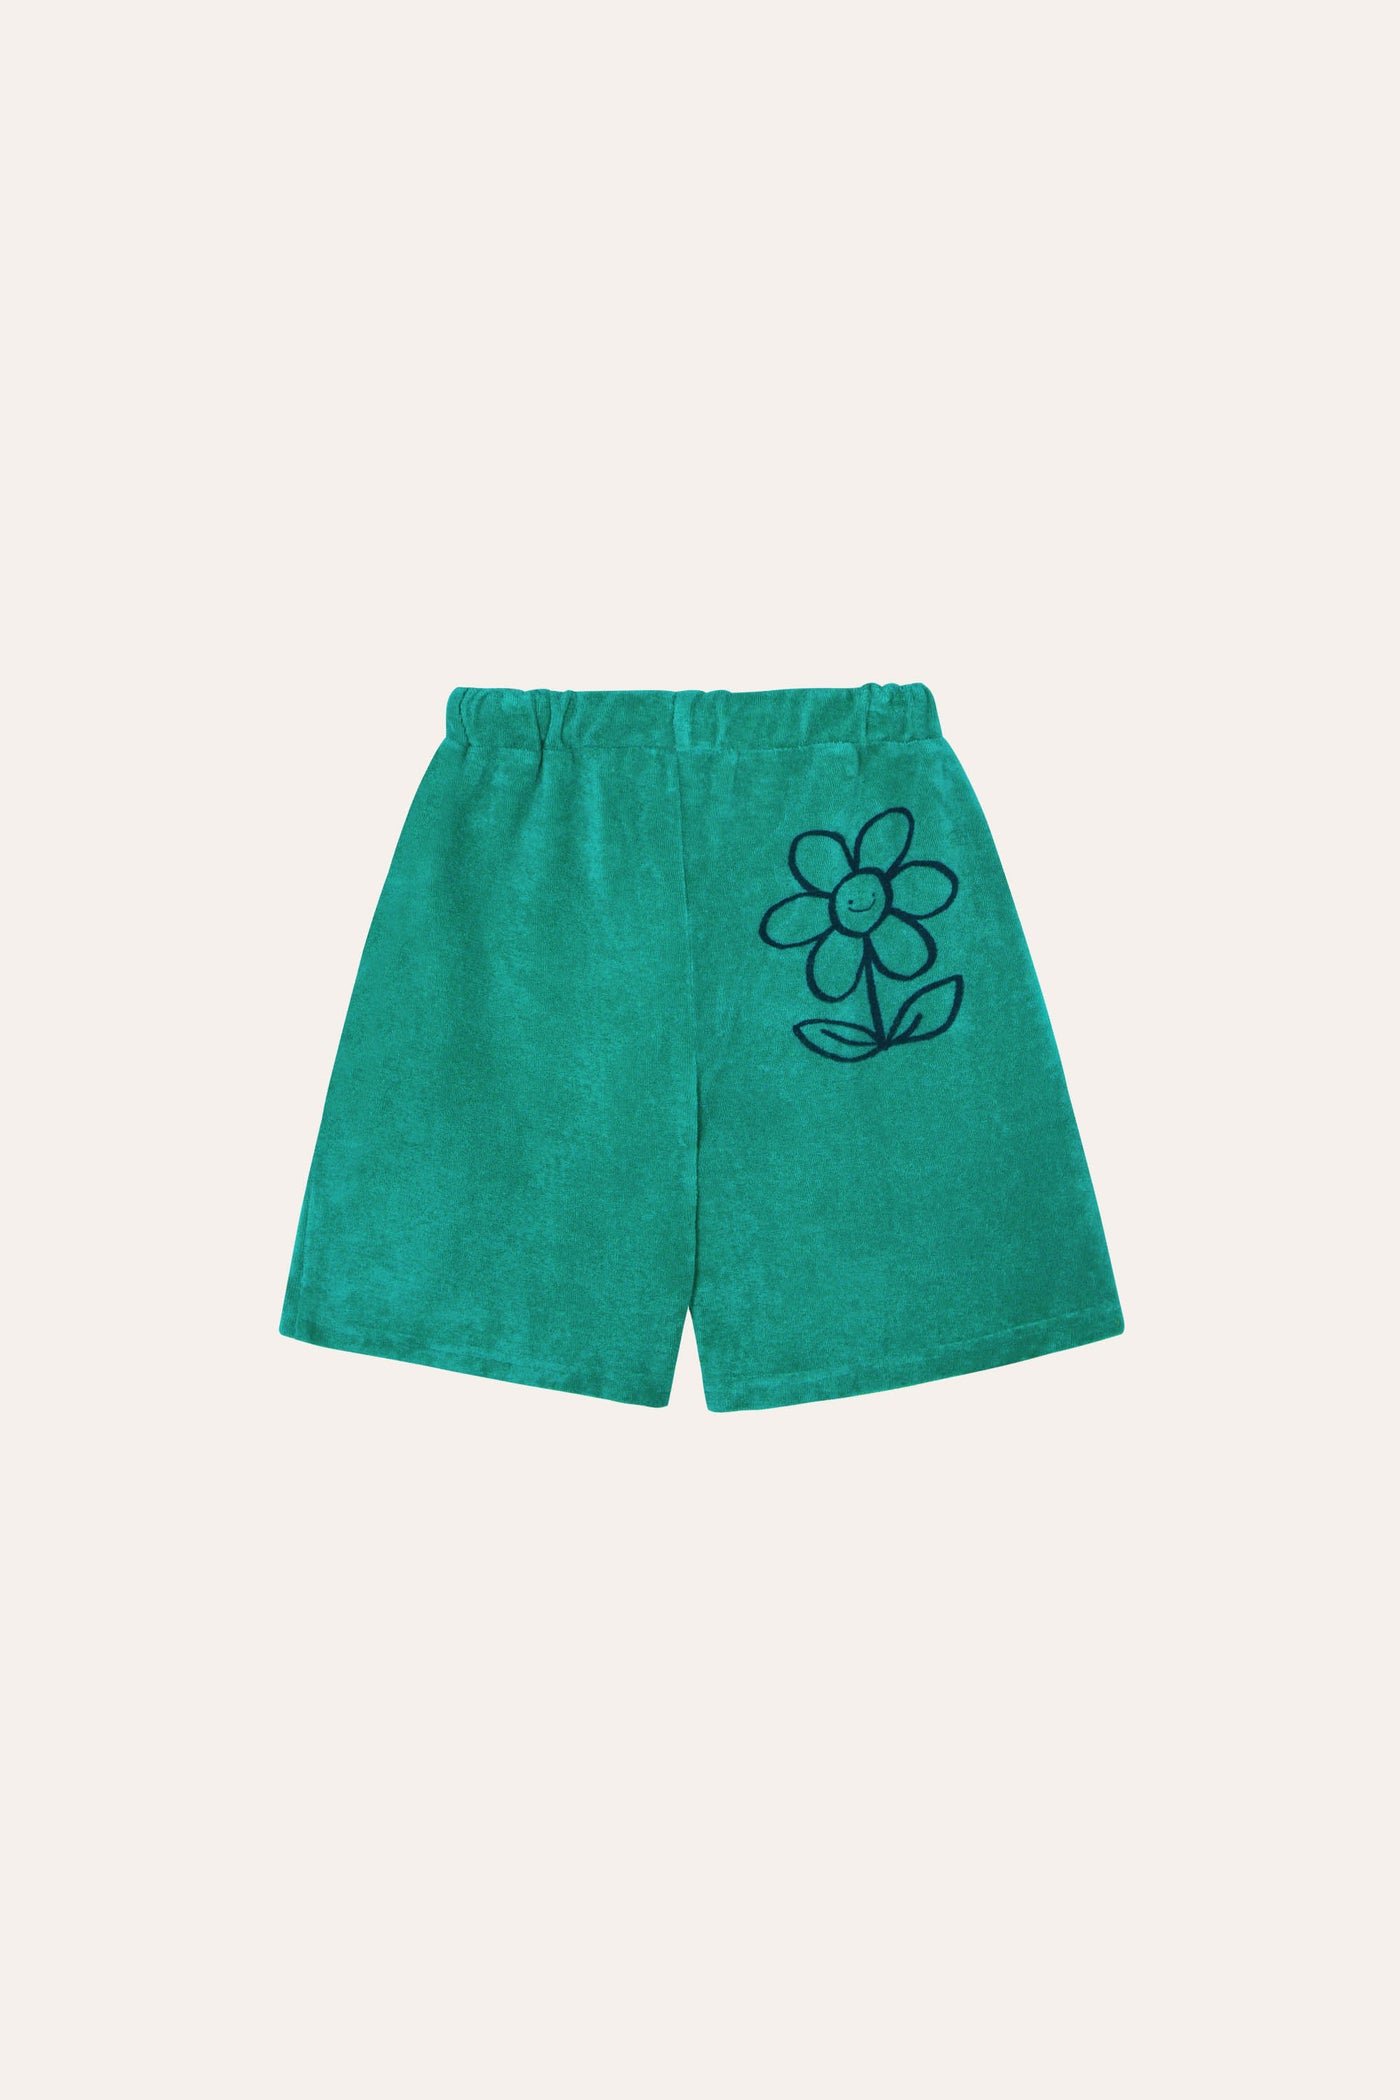 The campamento shorts verdes toalla